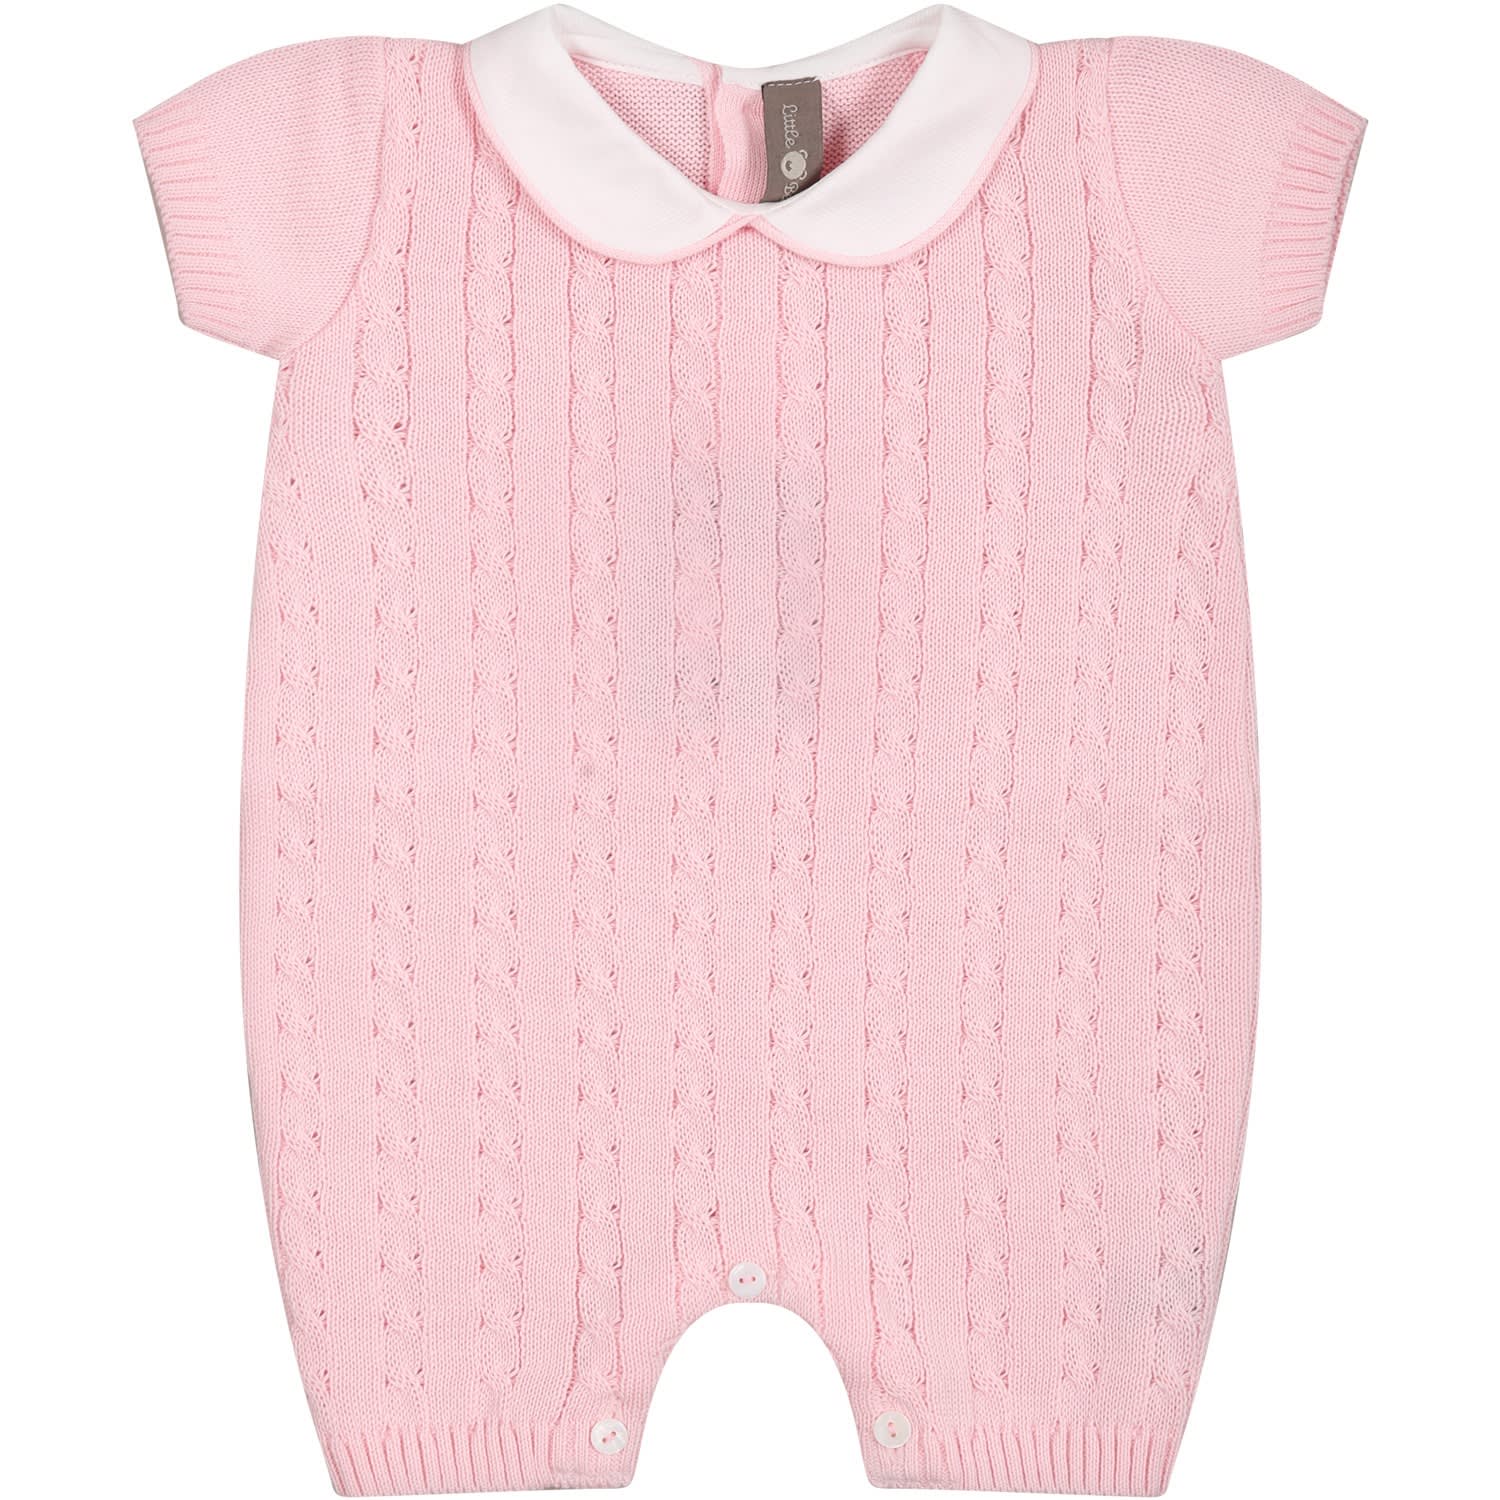 Little Bear Pink Romper For Baby Girl